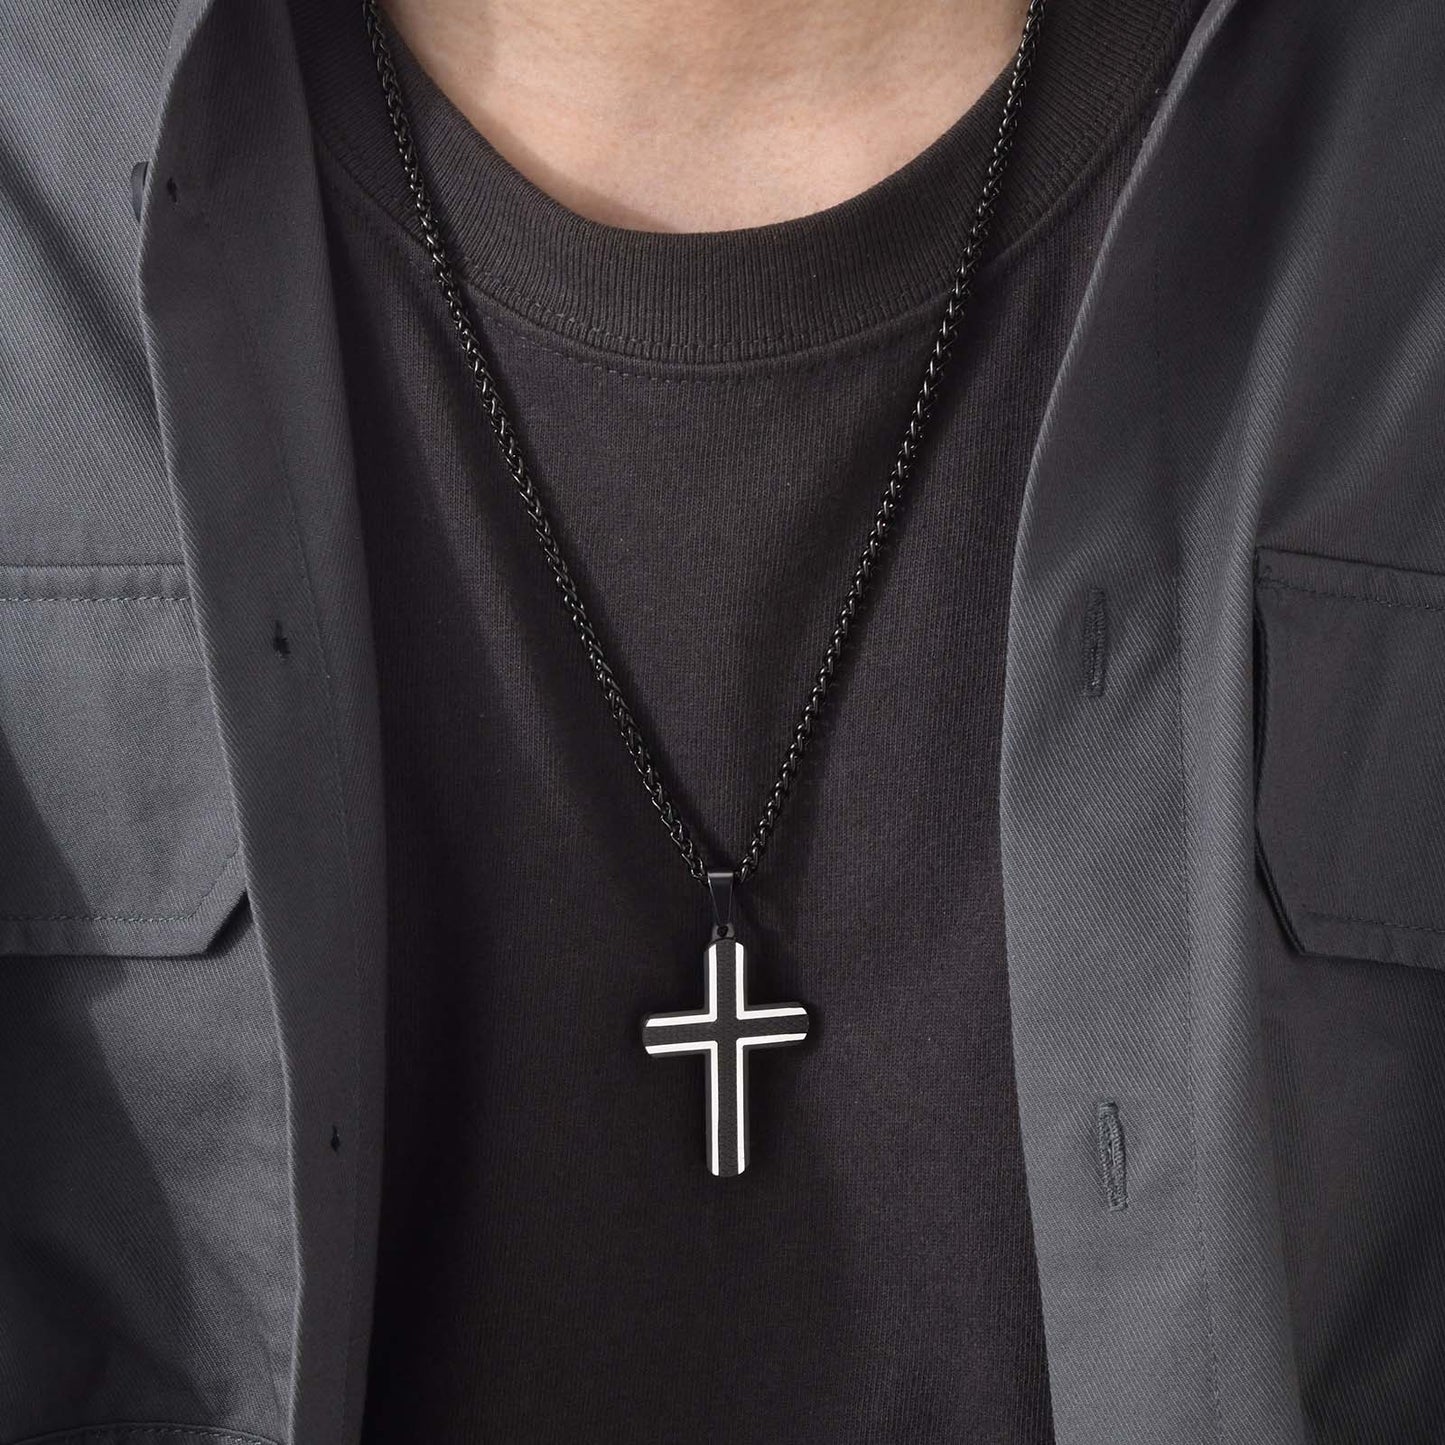 Pendiente y Collar para Hombre Cross Necklaces for Men Cross Cruz Crucifijo on neck